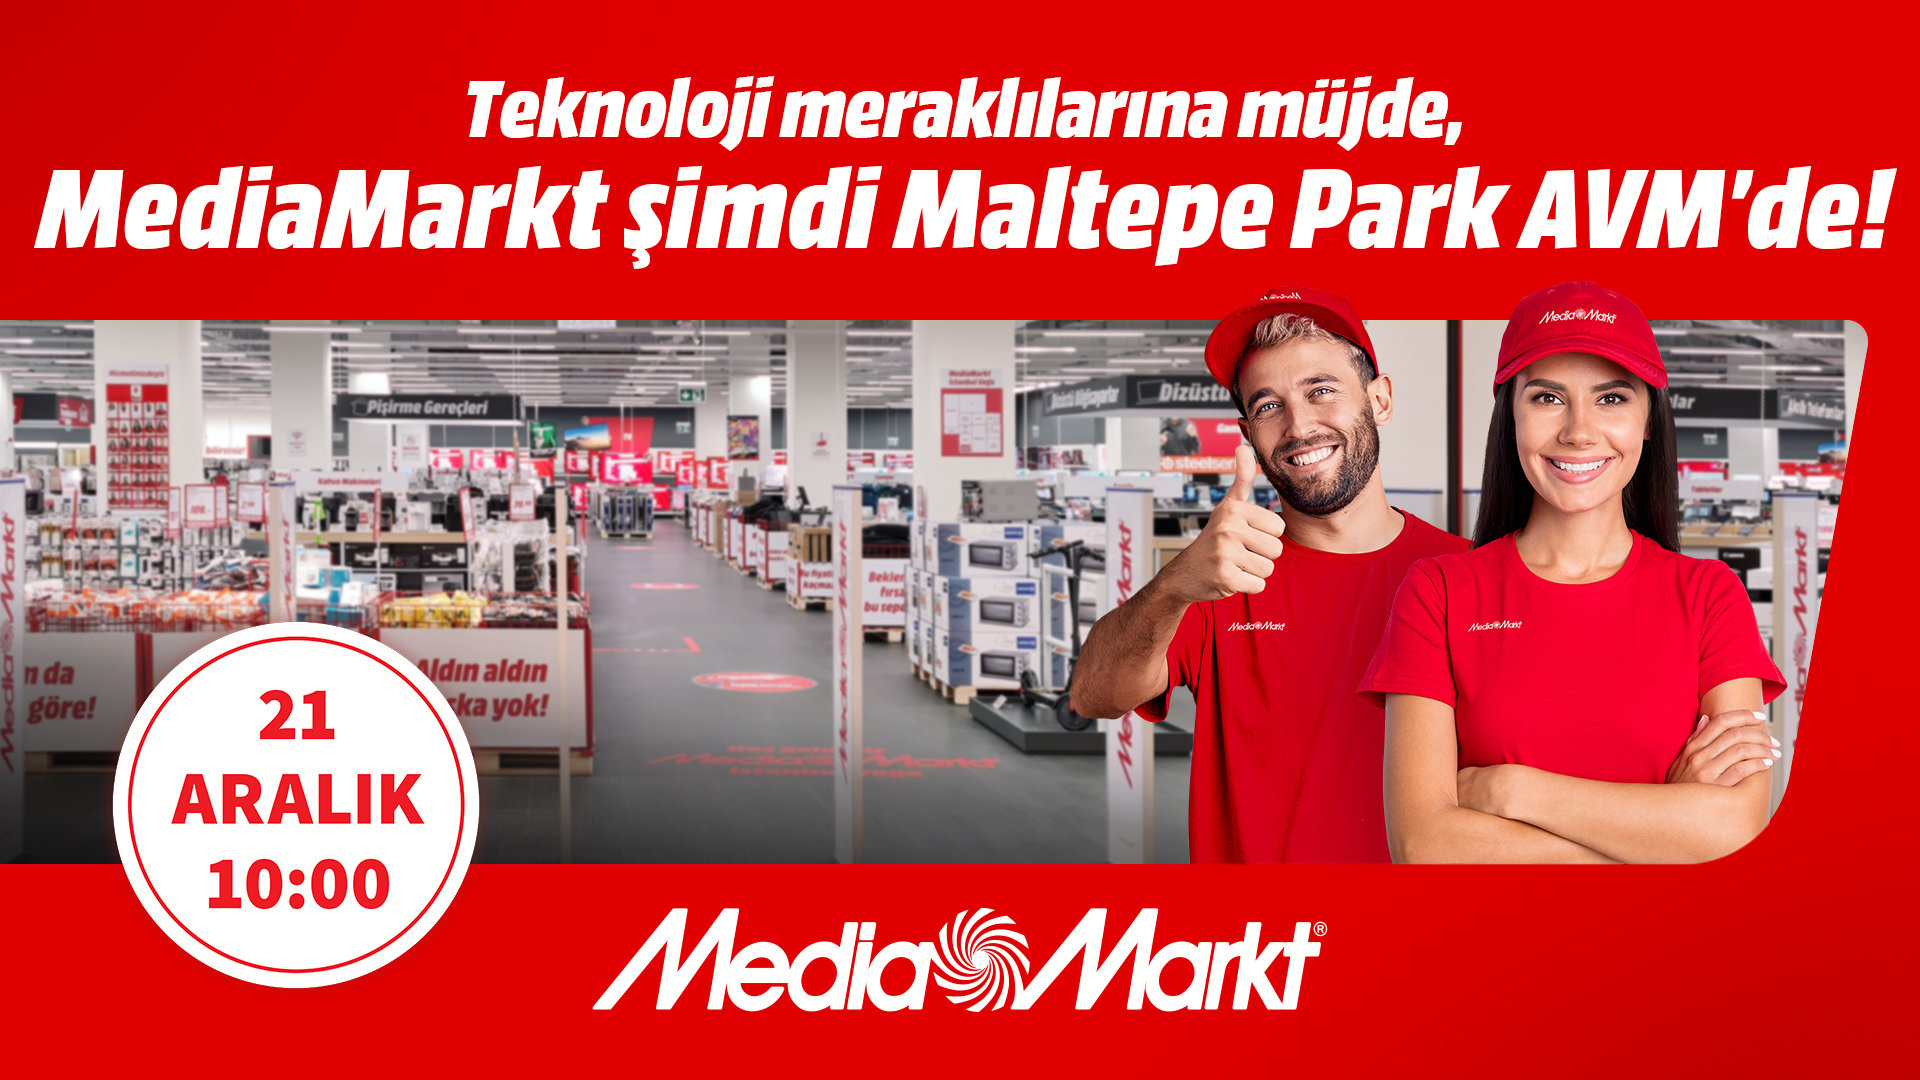 MediaMarkt Maltepe Park AVM